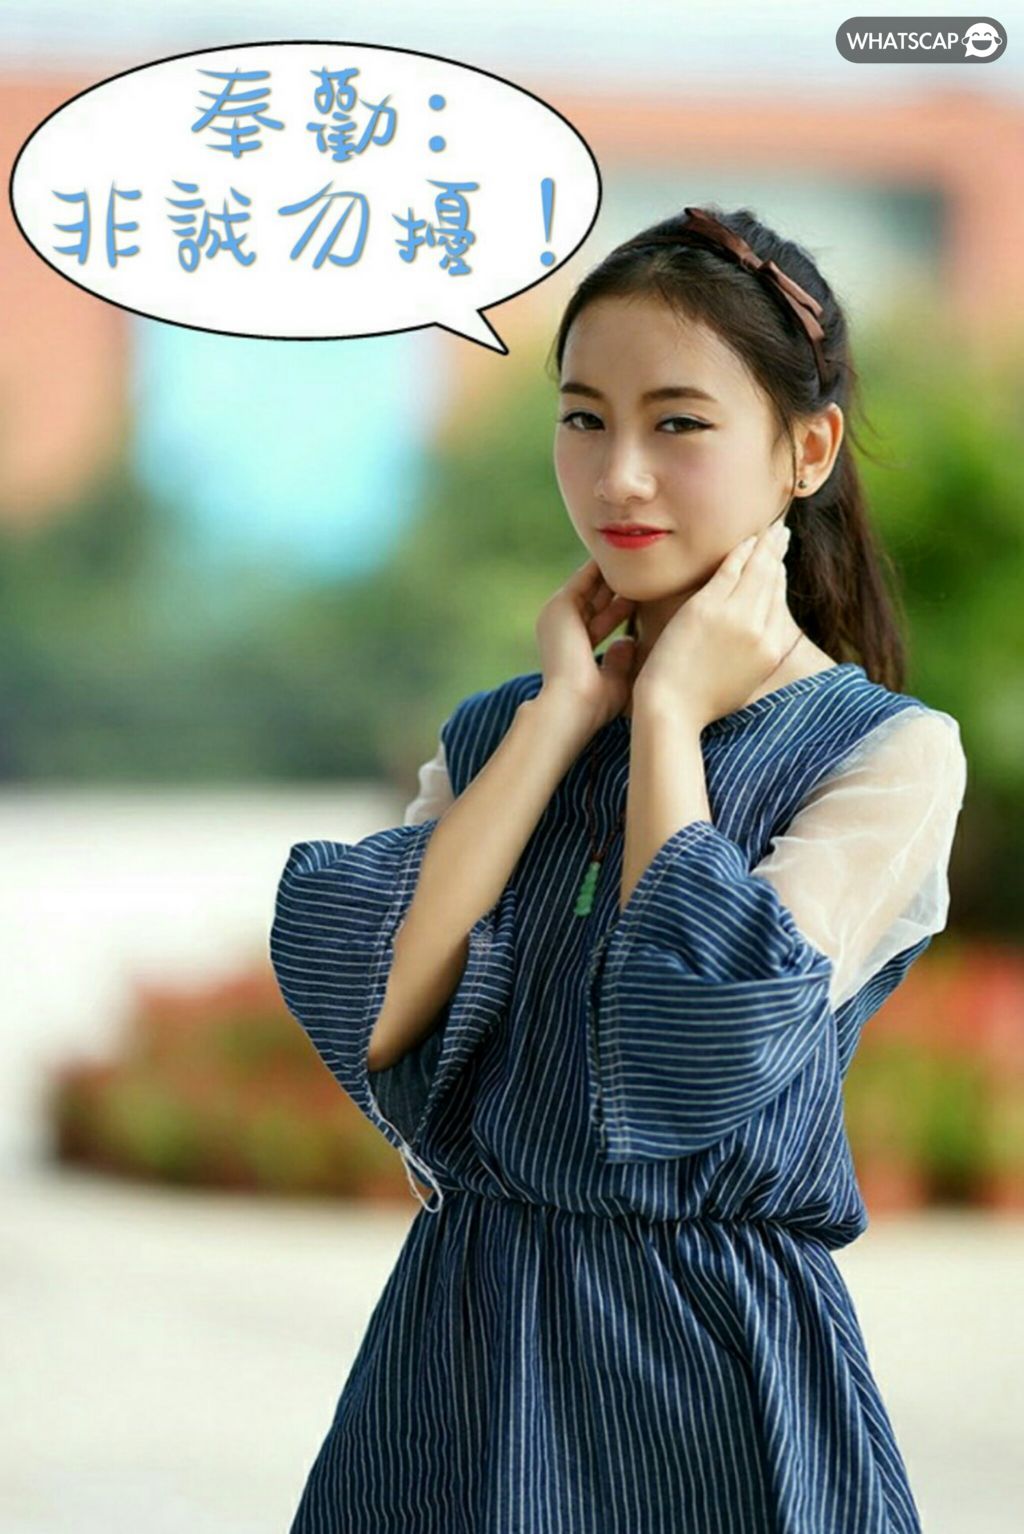 ins美女推荐#3 韩国DJ小姐姐원미령 - 哔哩哔哩